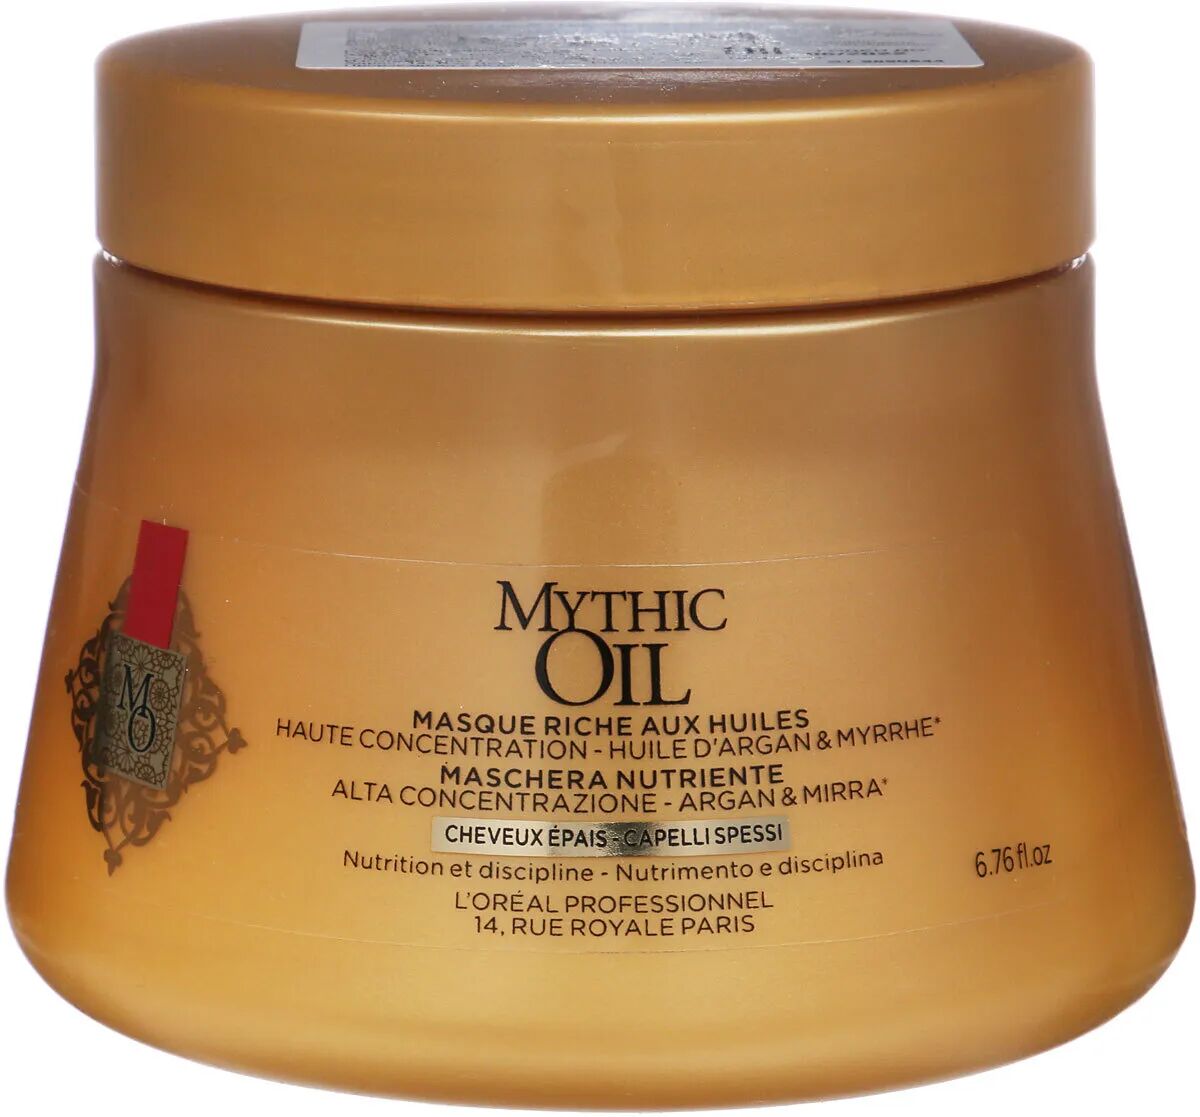 L’Oreal Маска Mythic Oil для плотных волос 200мл